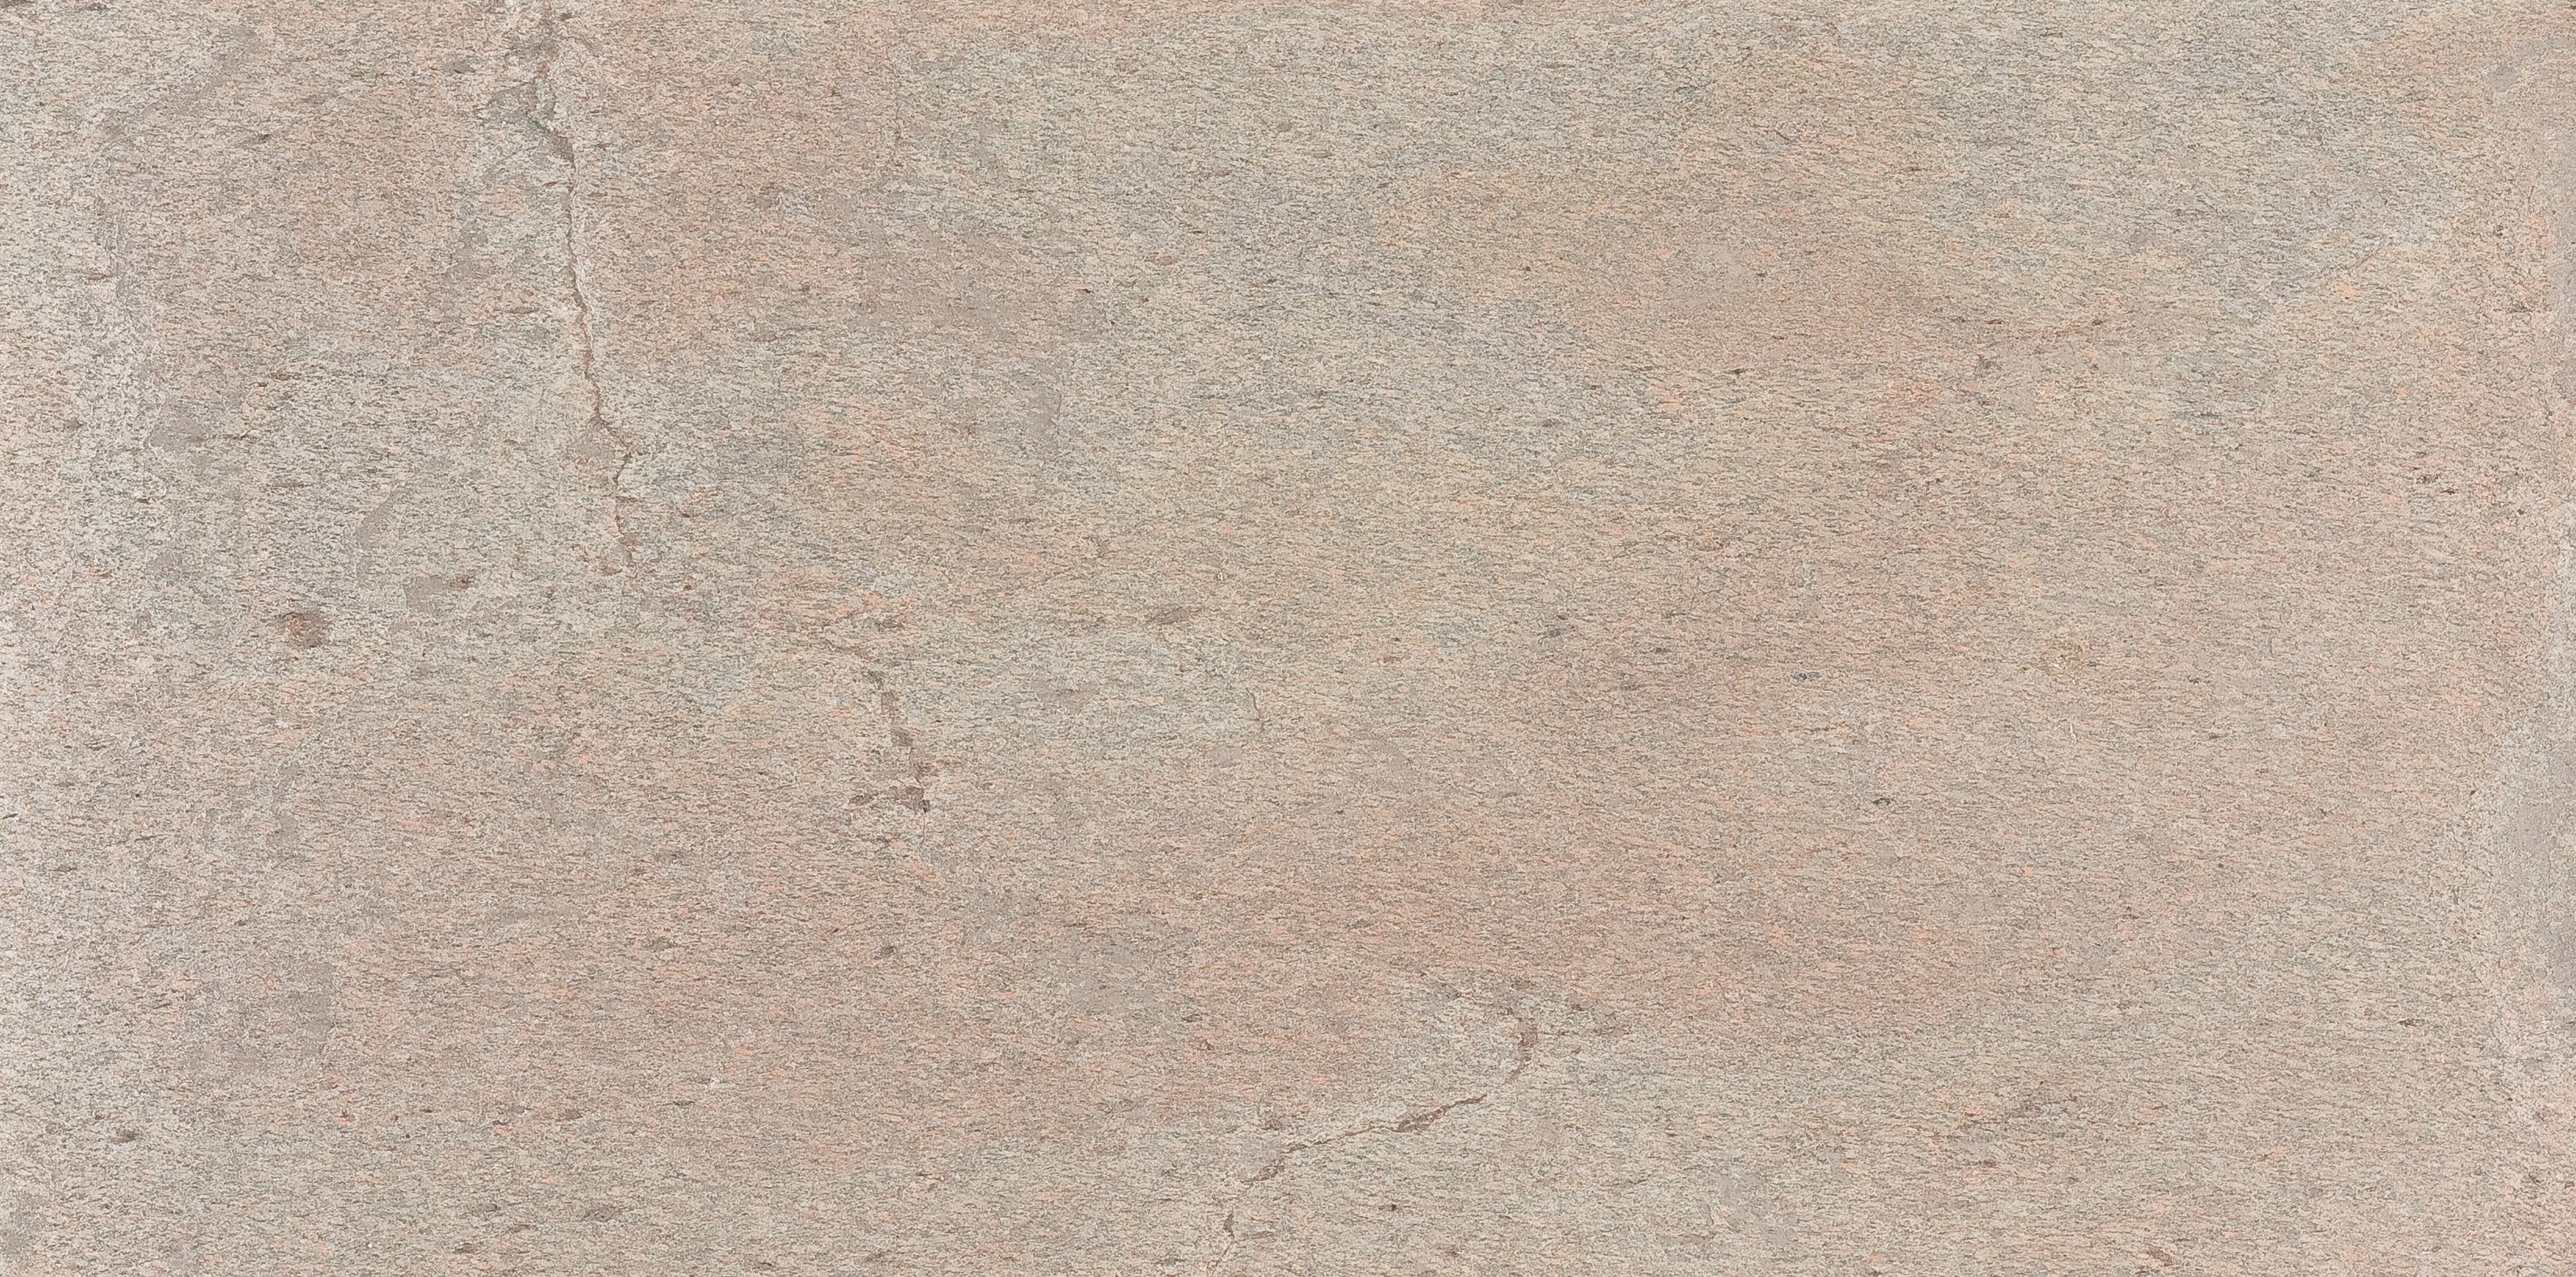 Slate Lite Wandpaneel Auro, BxL: 120x240 cm, 2,88 qm, (1-tlg) aus Echtstein